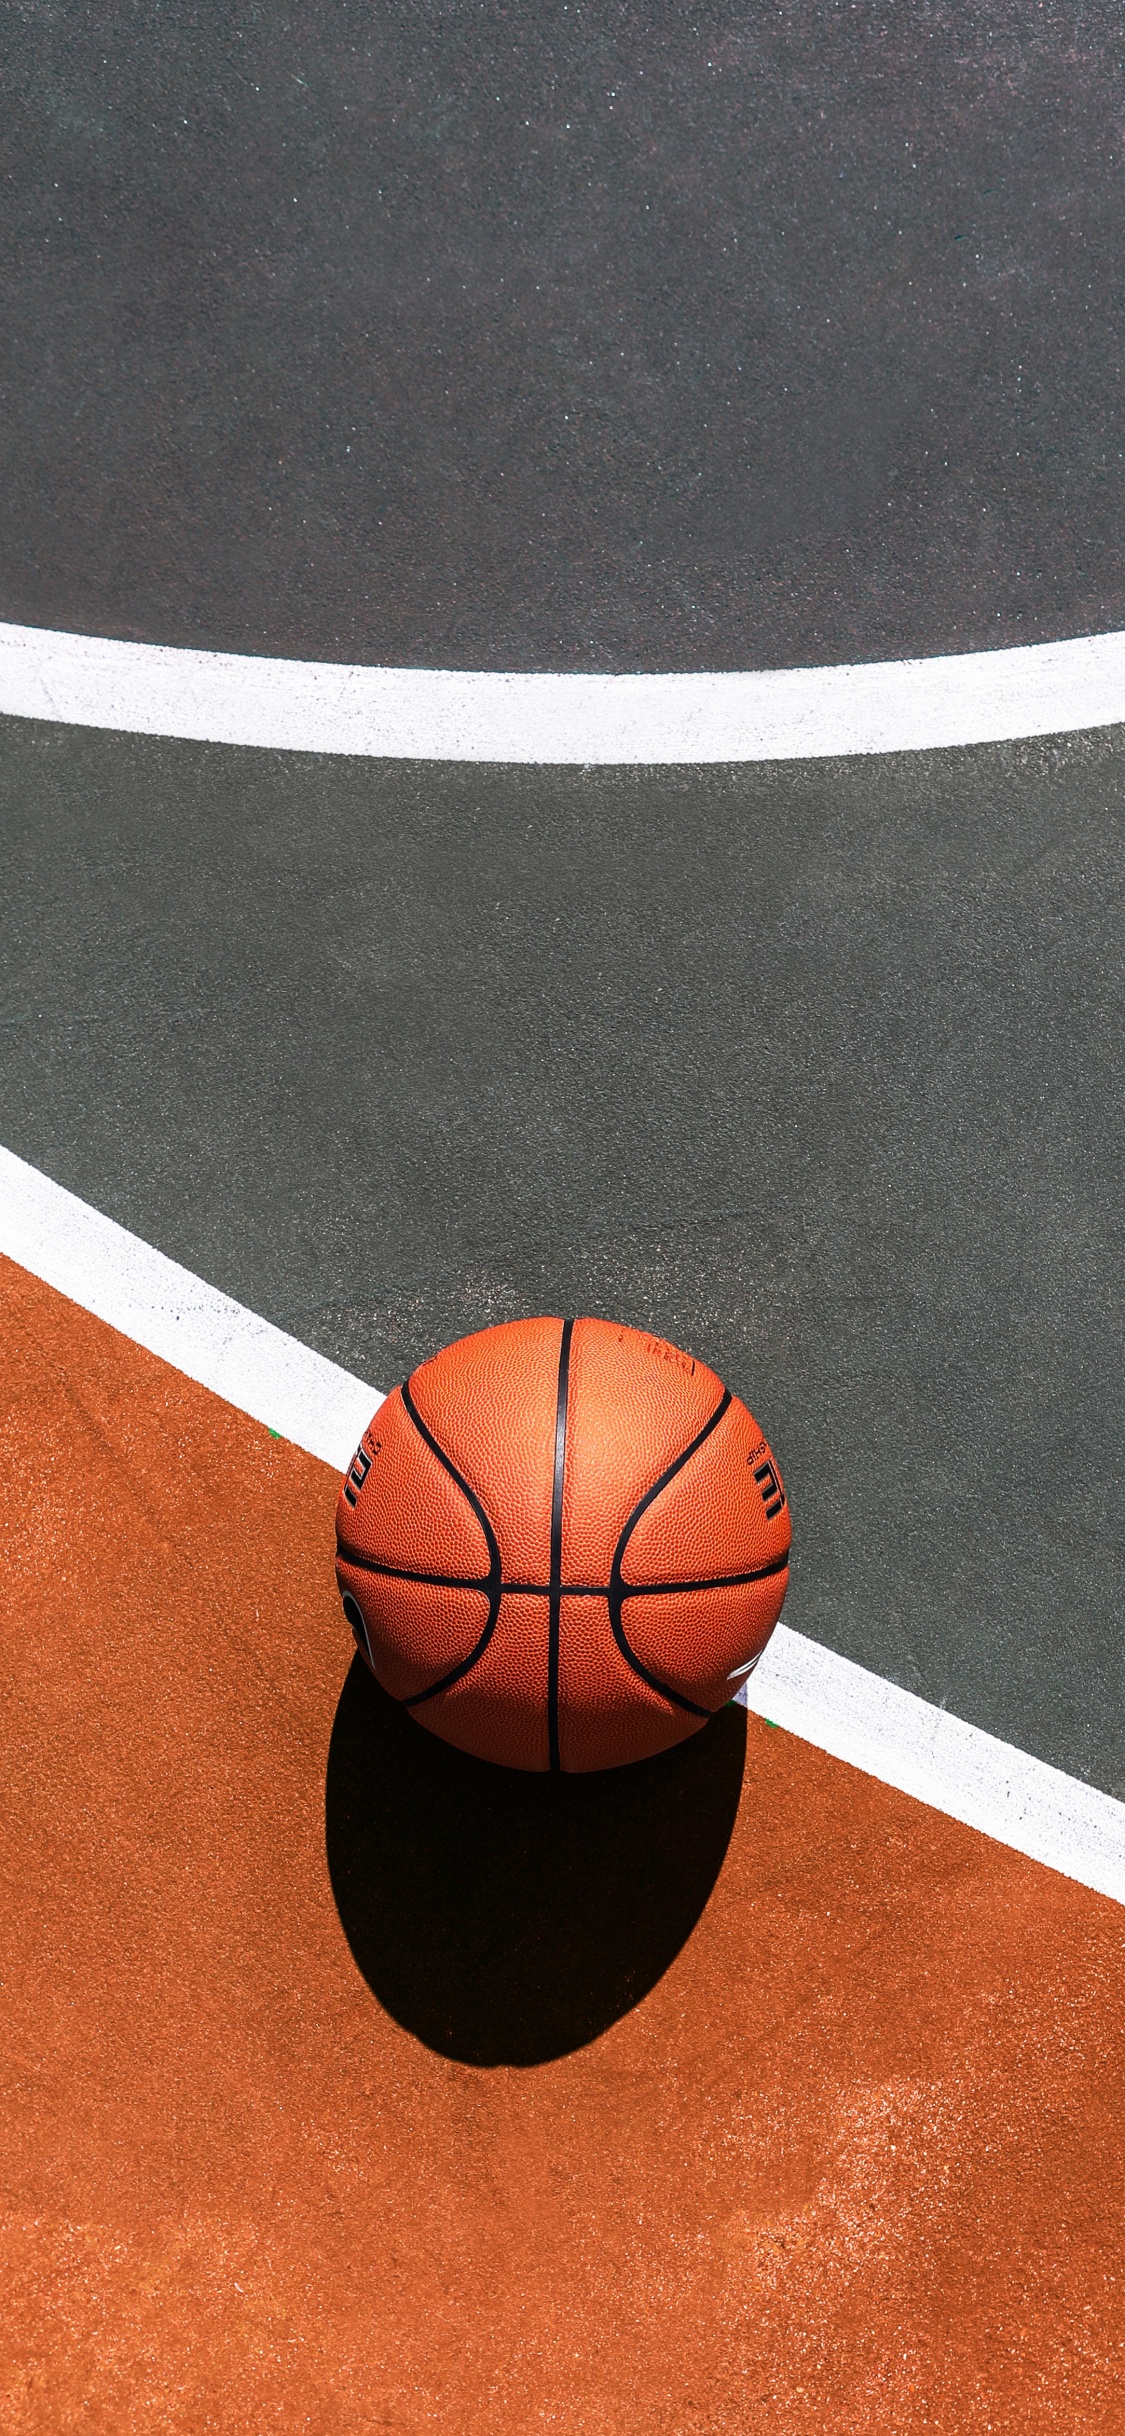 Basket-ball Sur un Terrain de Basket Bleu et Blanc. Wallpaper in 1125x2436 Resolution